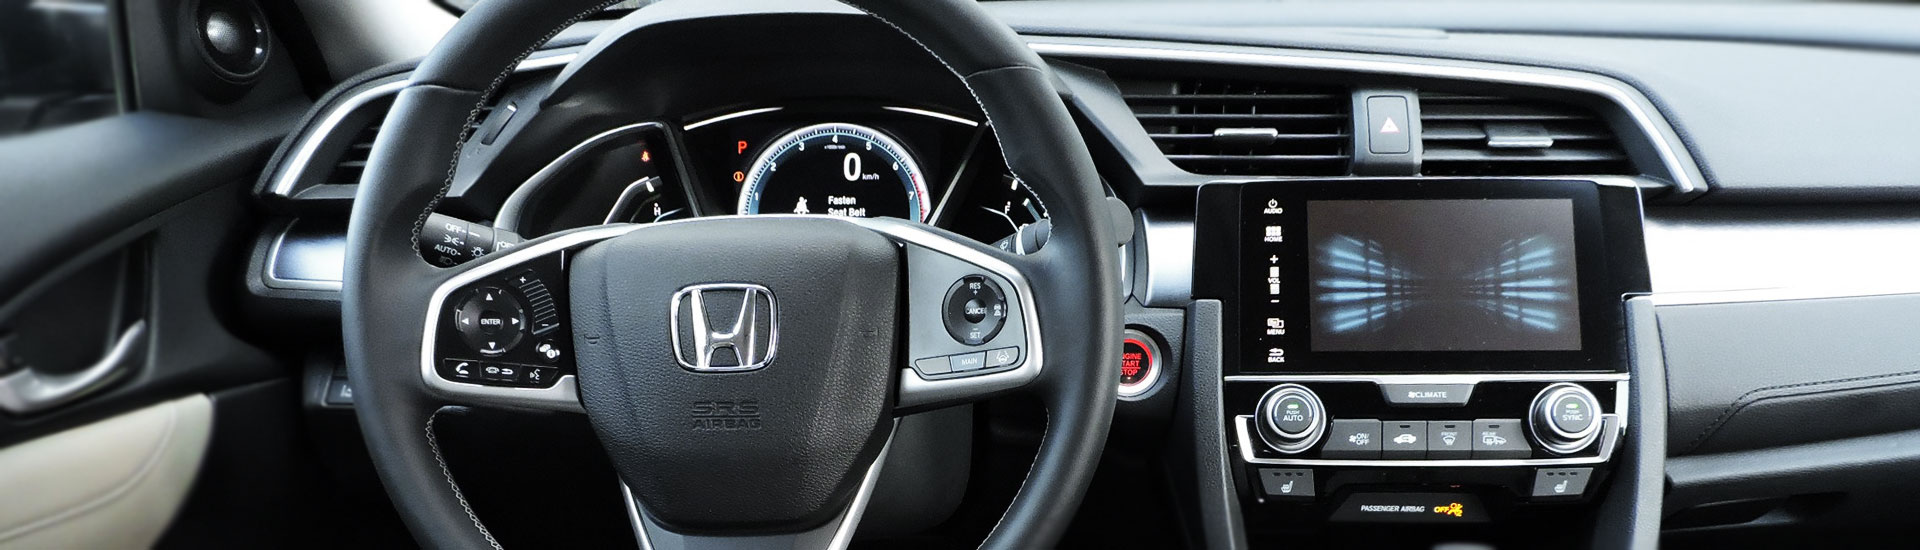 2022 Honda Accord Custom Dash Kits